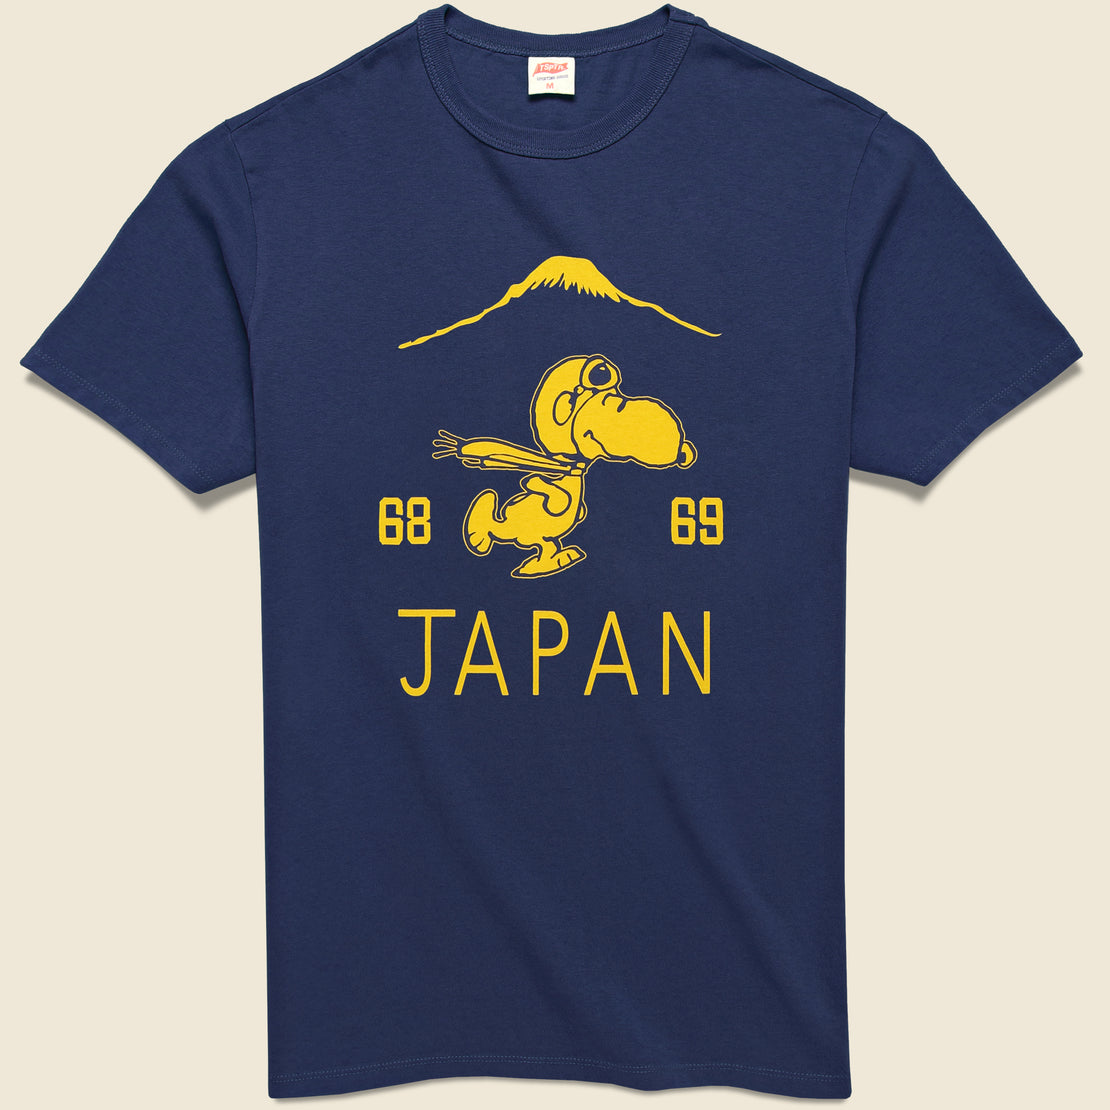 TSPTR Suka Japan Snoopy Tee - Navy